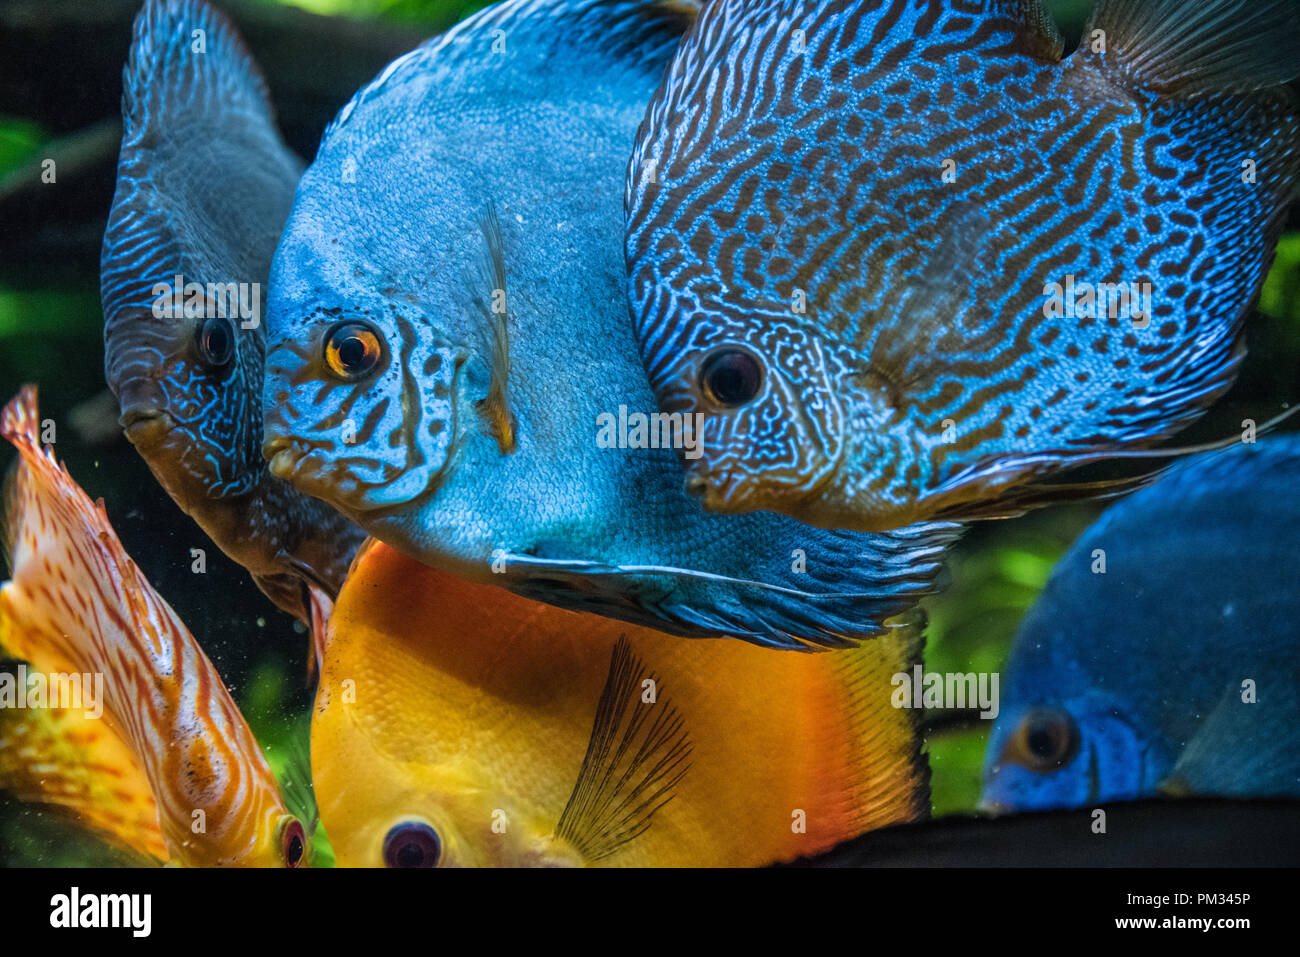 Pesce dell'amazzone immagini e fotografie stock ad alta risoluzione - Alamy